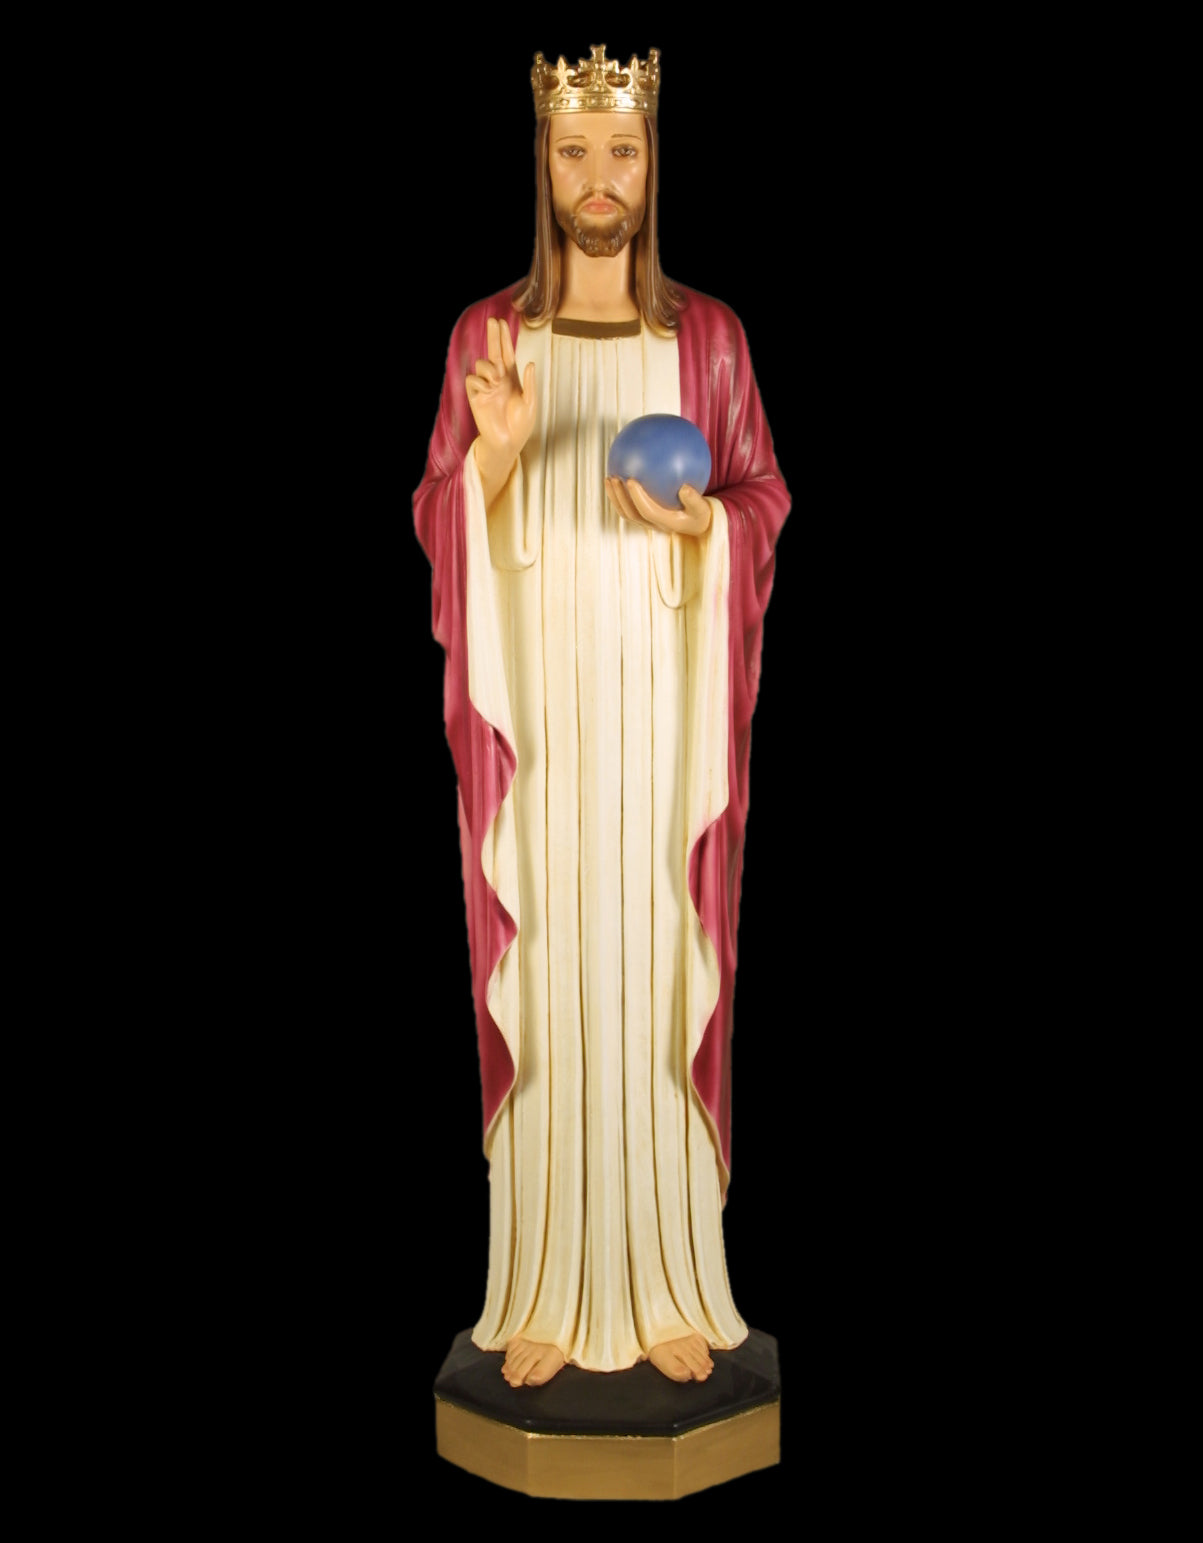 christ-the-king-fiberglass-statue-f7054rlc.jpg